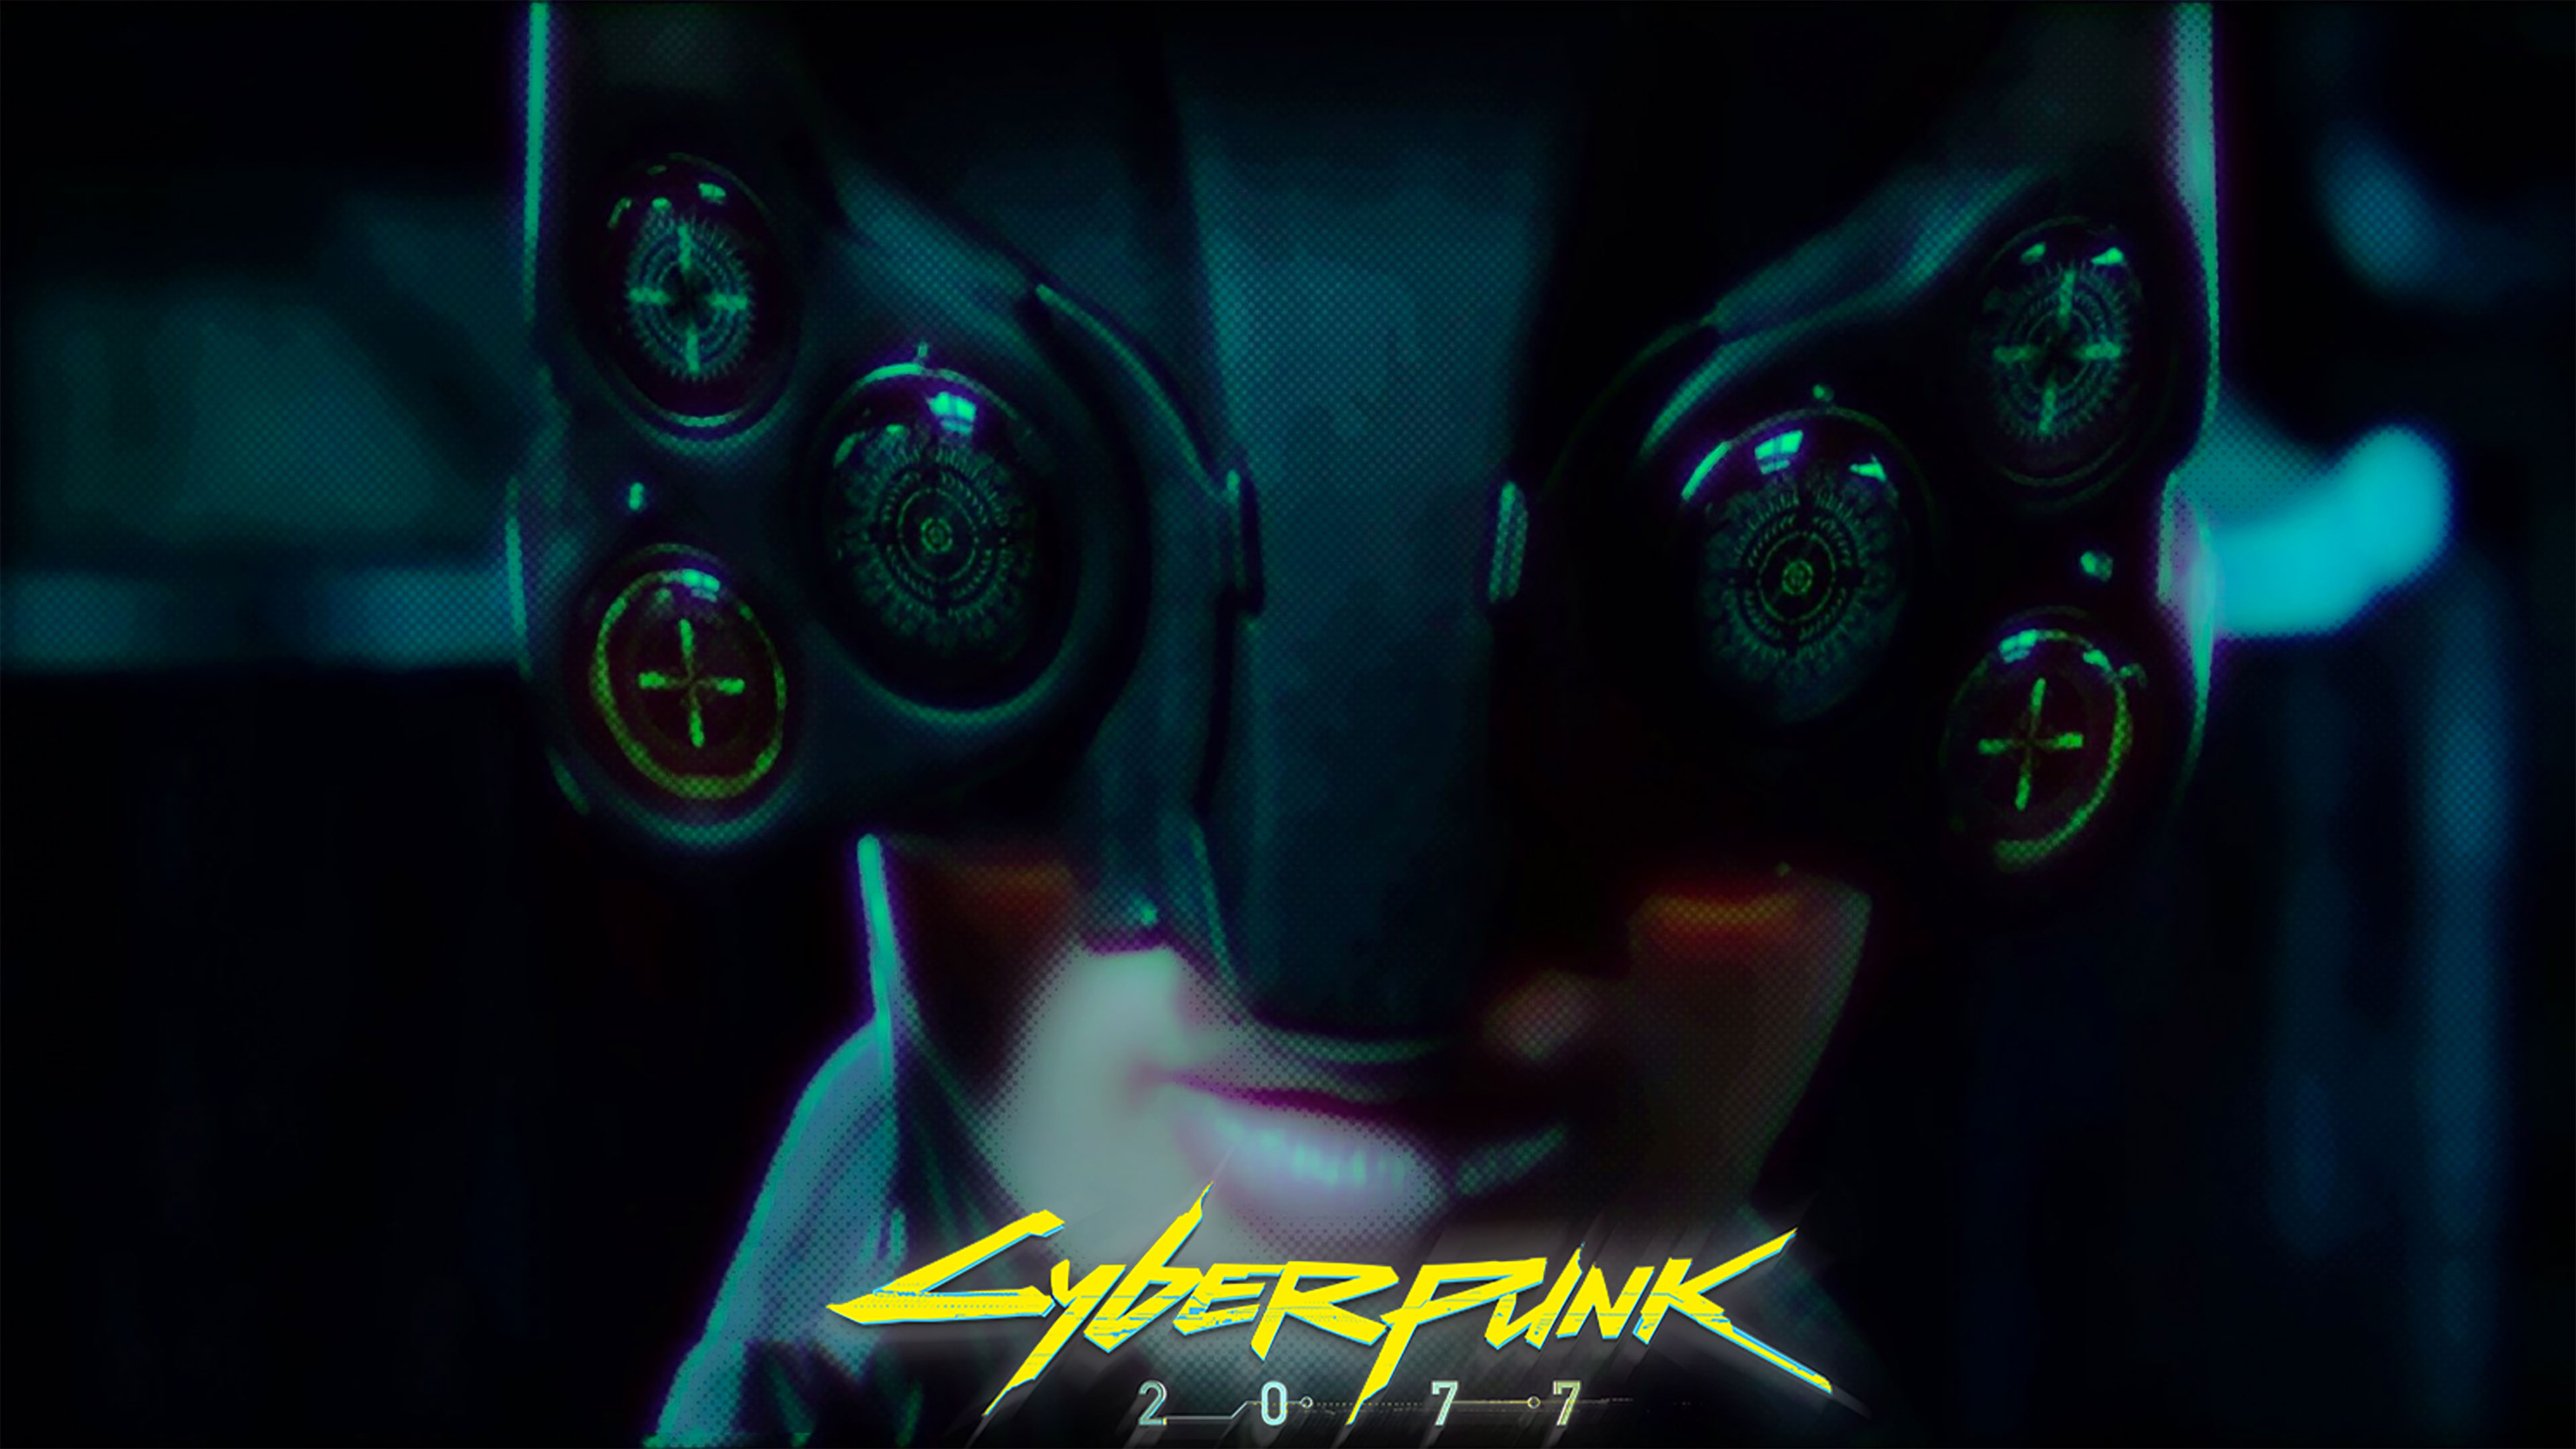 Cyberpunk 2077 Posters 4k - HD Wallpaper 